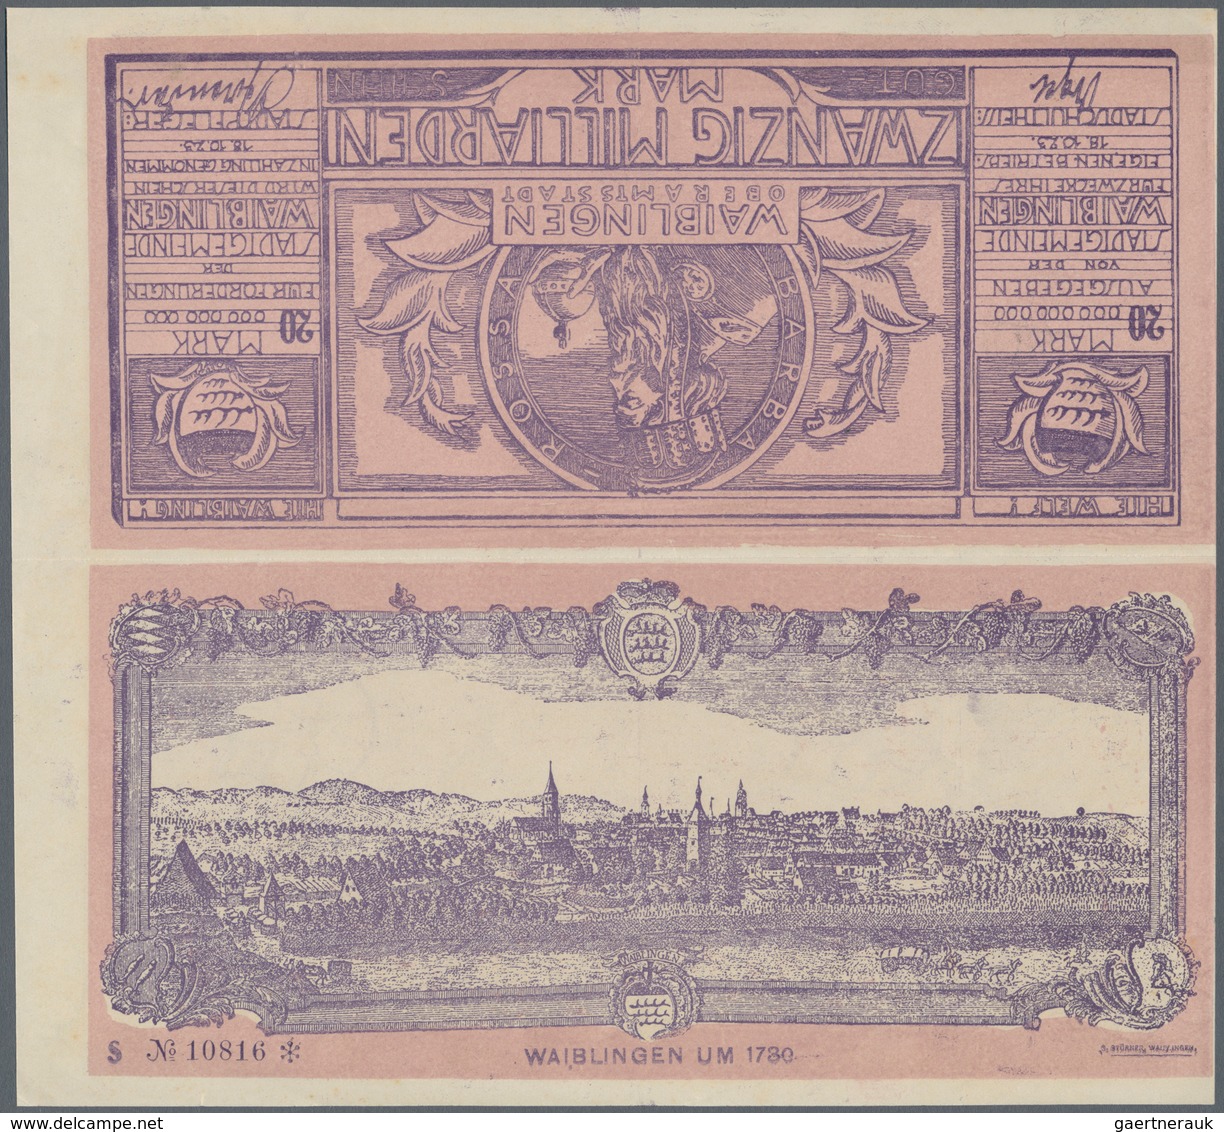 Deutschland - Notgeld - Württemberg: Waiblingen, Stadtgemeinde, 20 Mrd. Mark, 18.10.1923, Mit Druckf - [11] Emisiones Locales